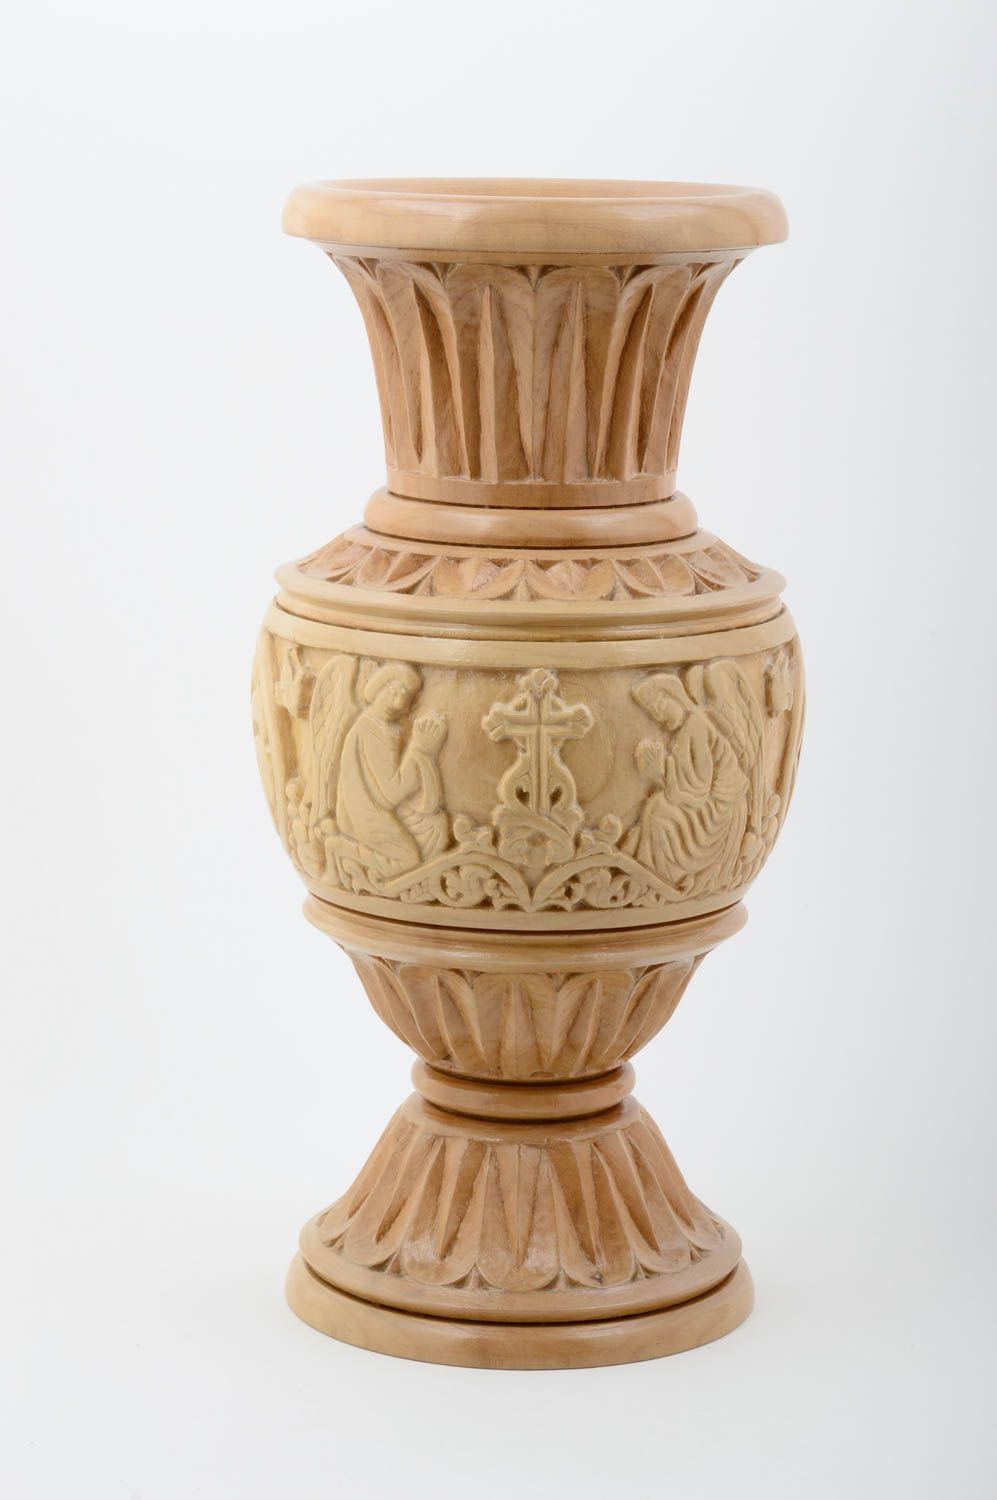 Deko Vase Handmade Holz Vase Wohnzimmer Deko Tisch Deko geschnitzt schön hell foto 1